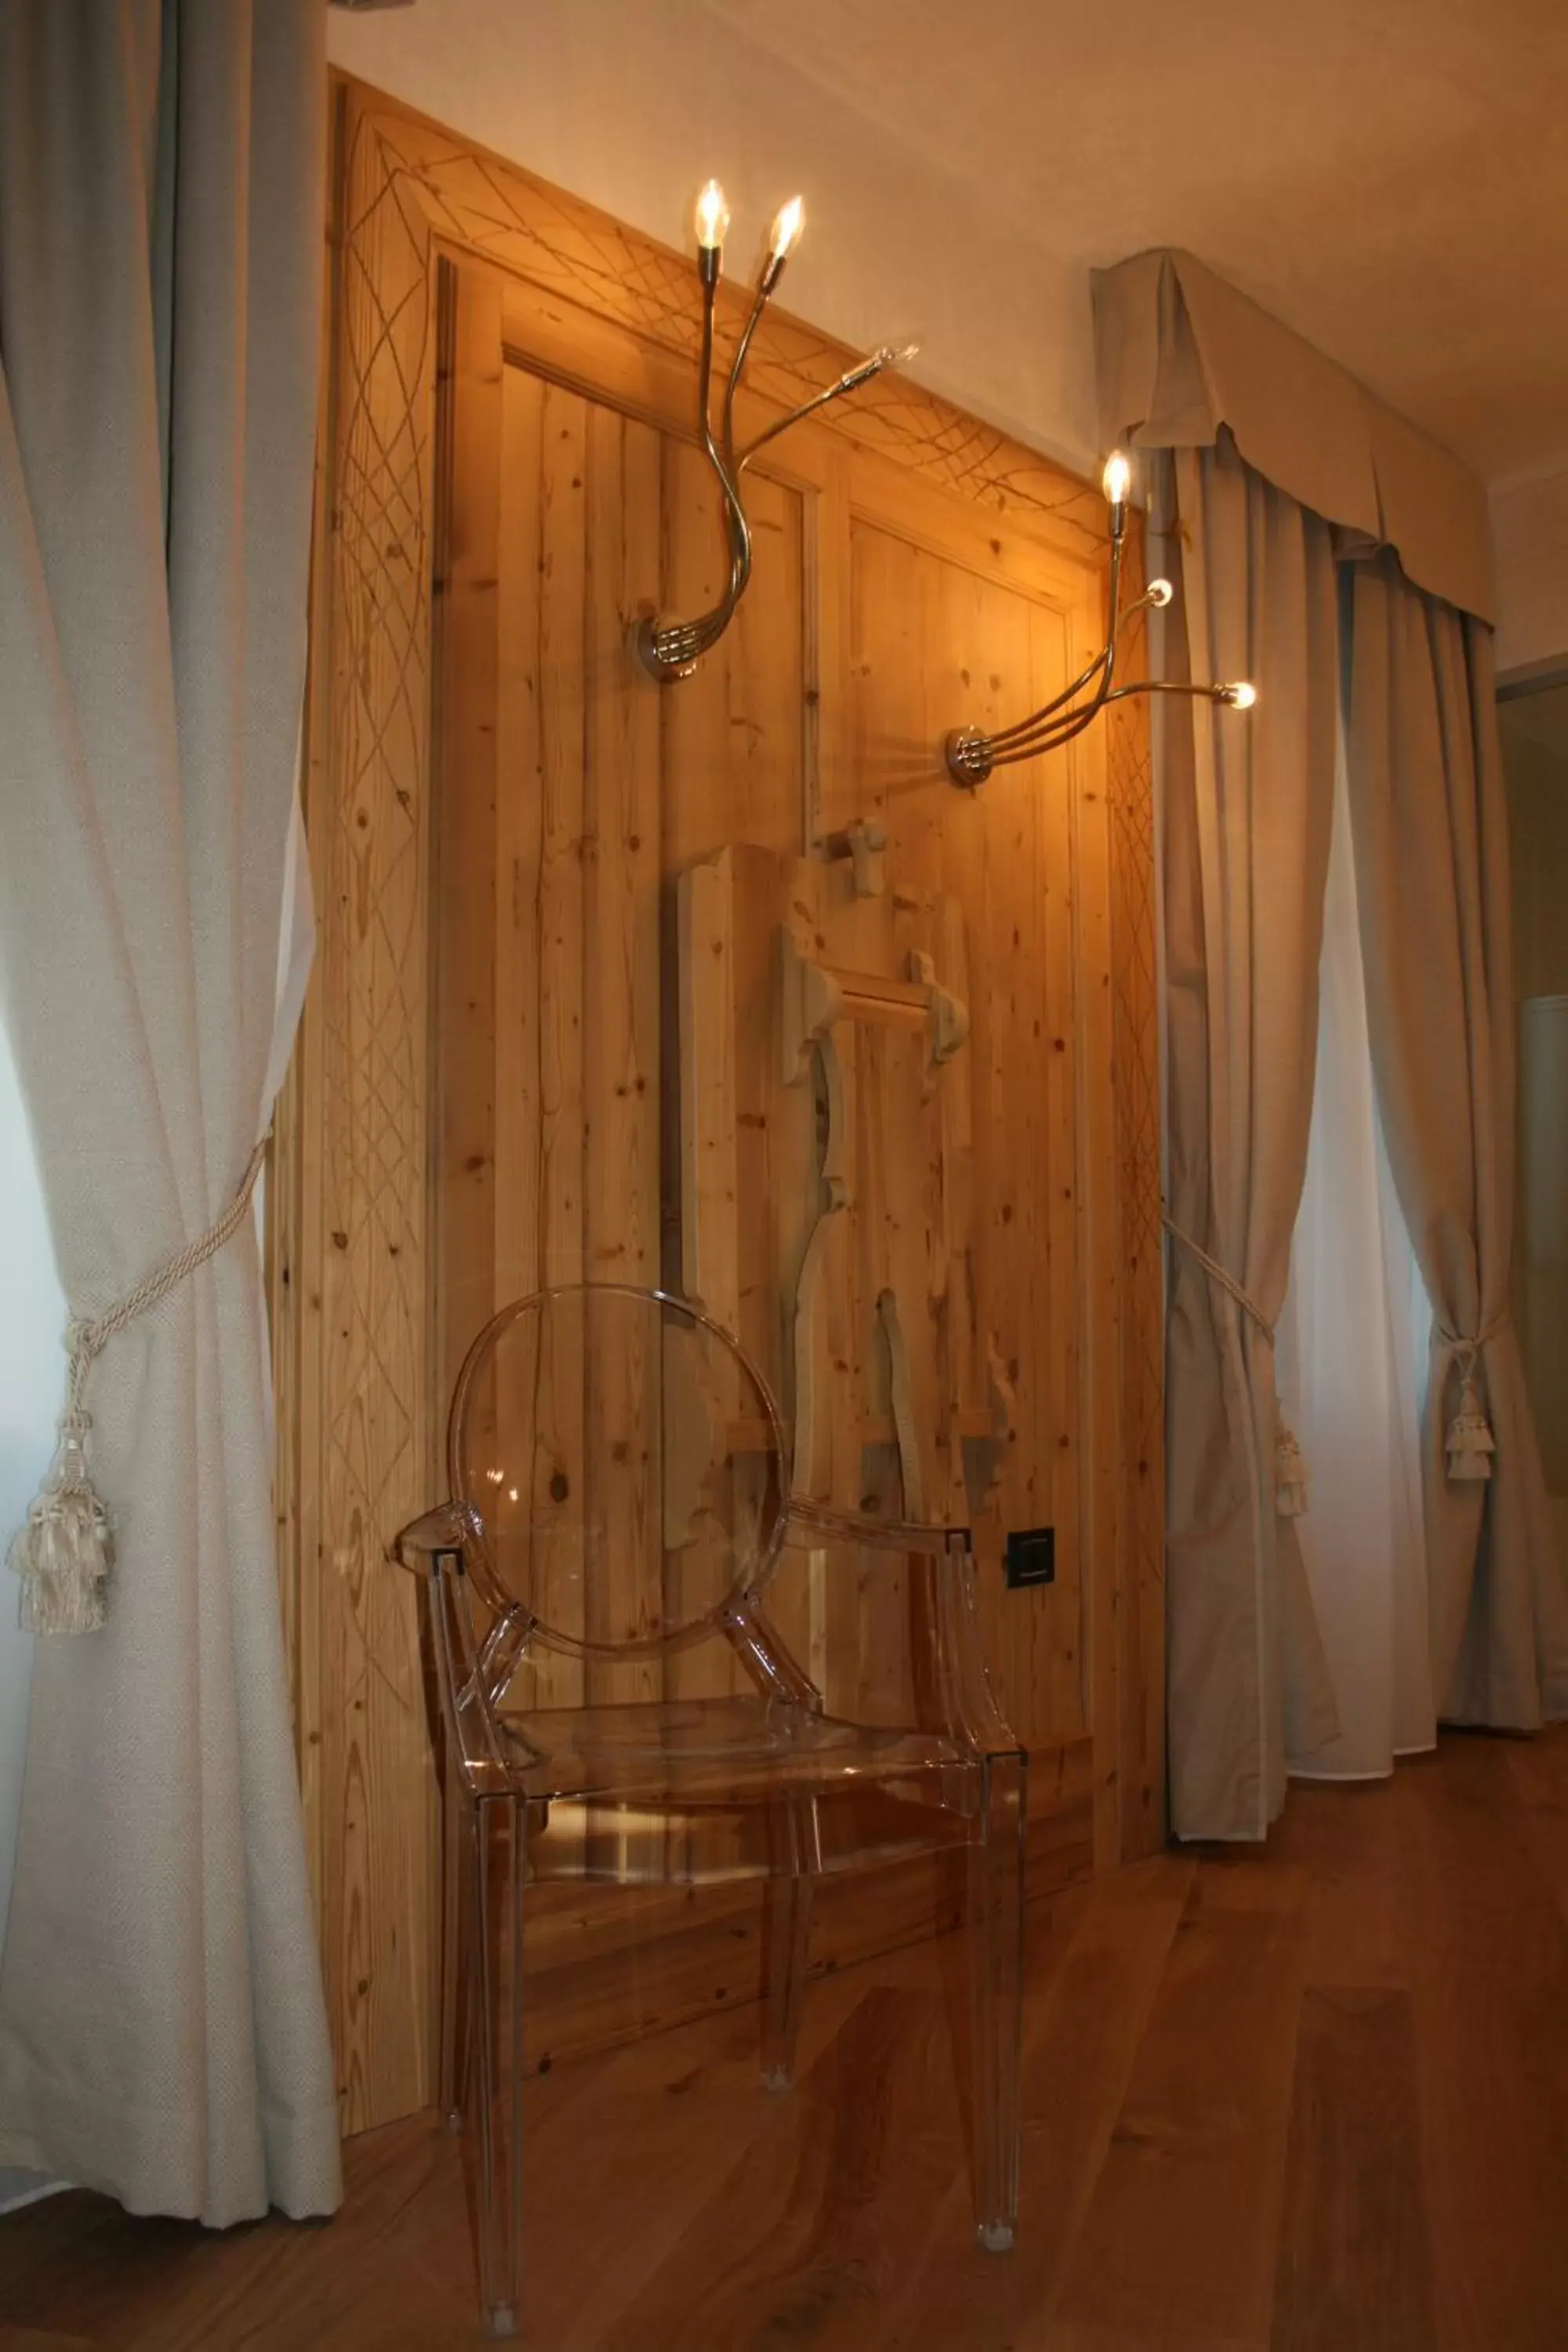 Photo of the whole room, Bathroom in Hotel Orso Grigio